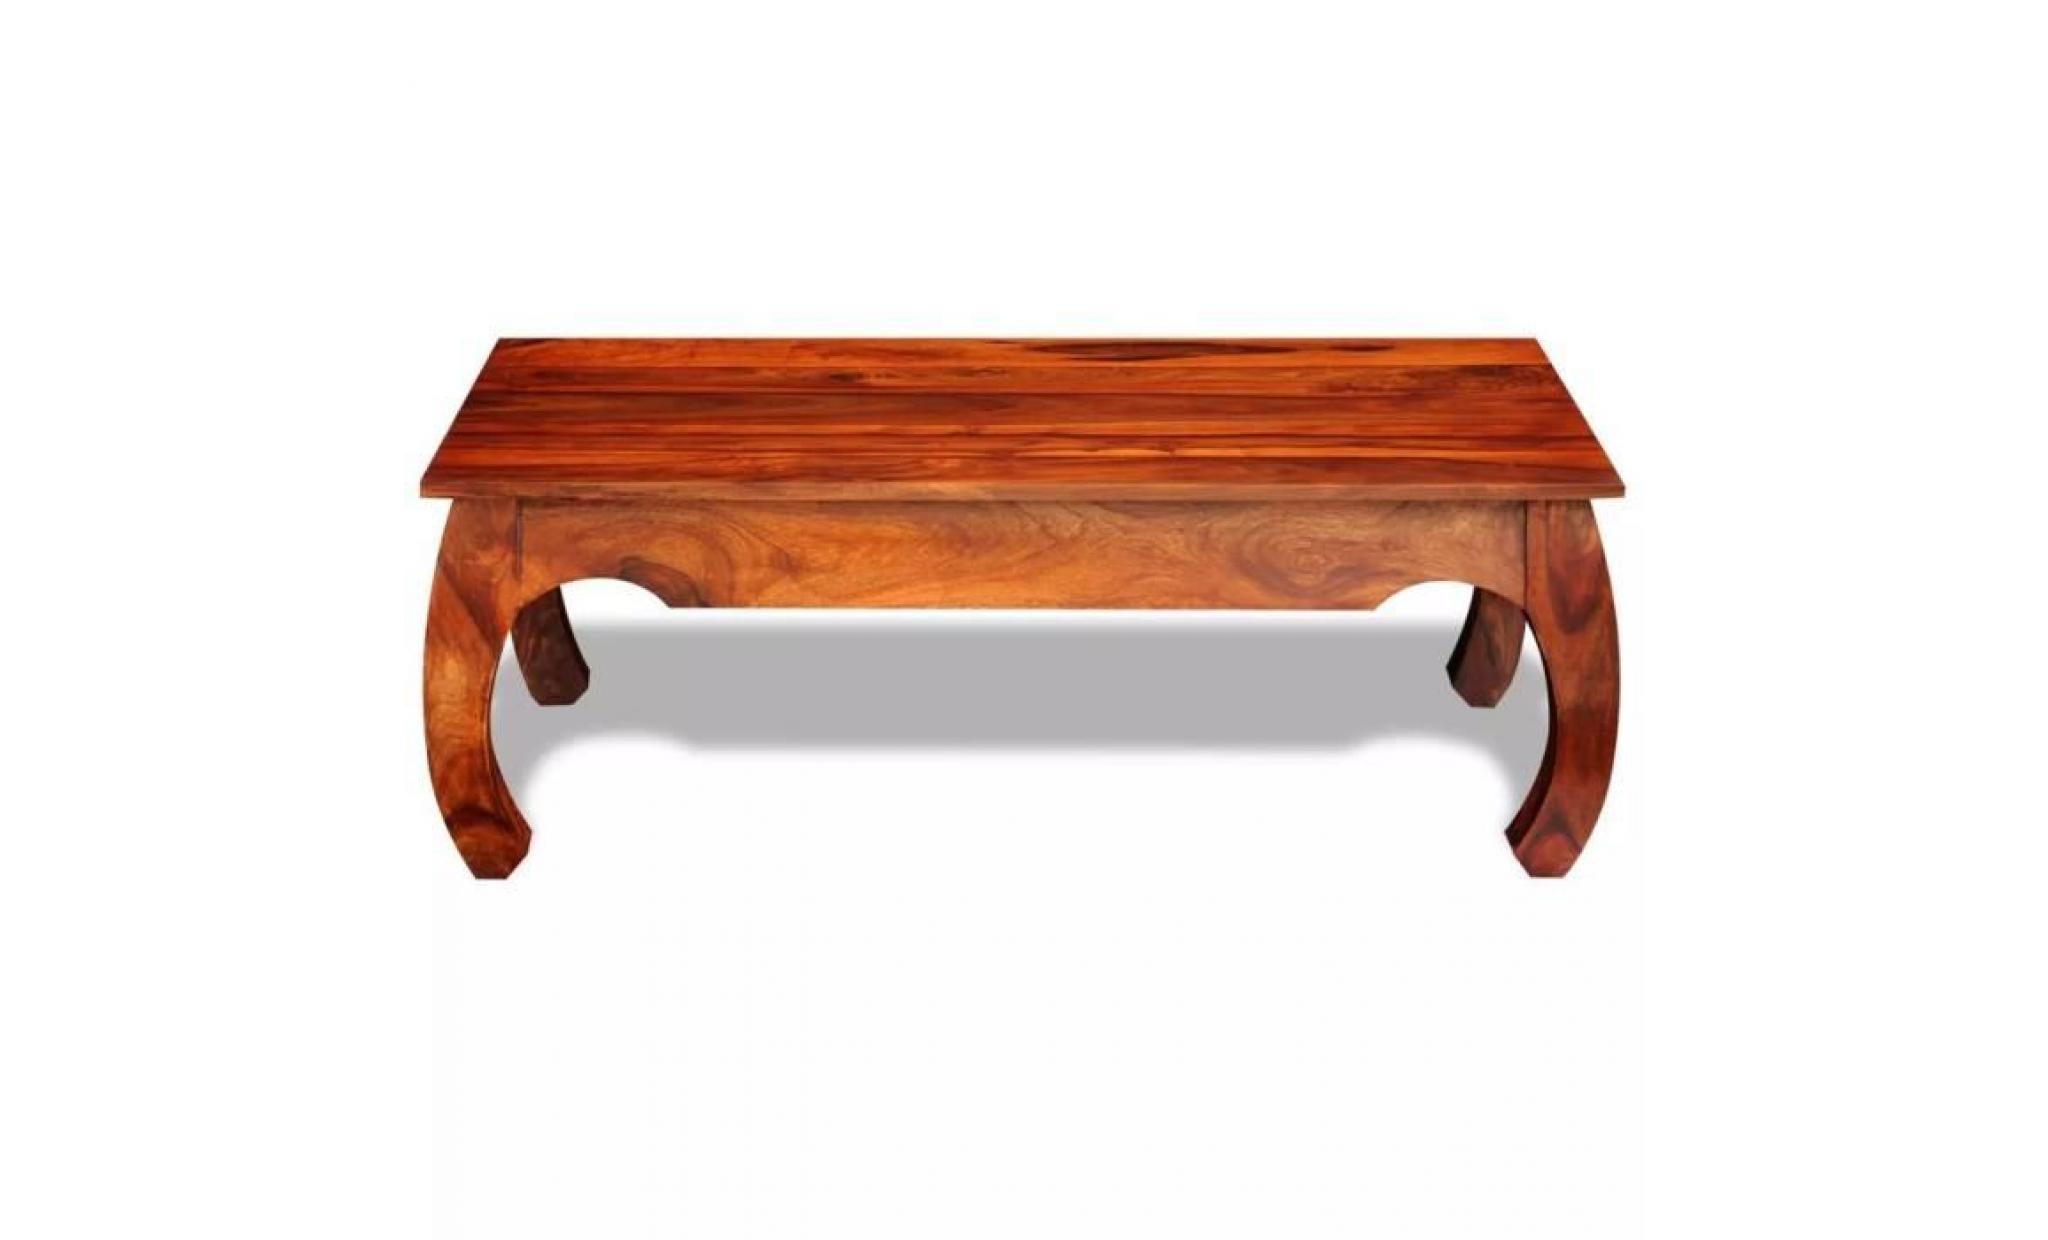 r4 cette table basse en bois massif de sheesham sera un accessoire intemporel a votre decor. les variations dans les gra